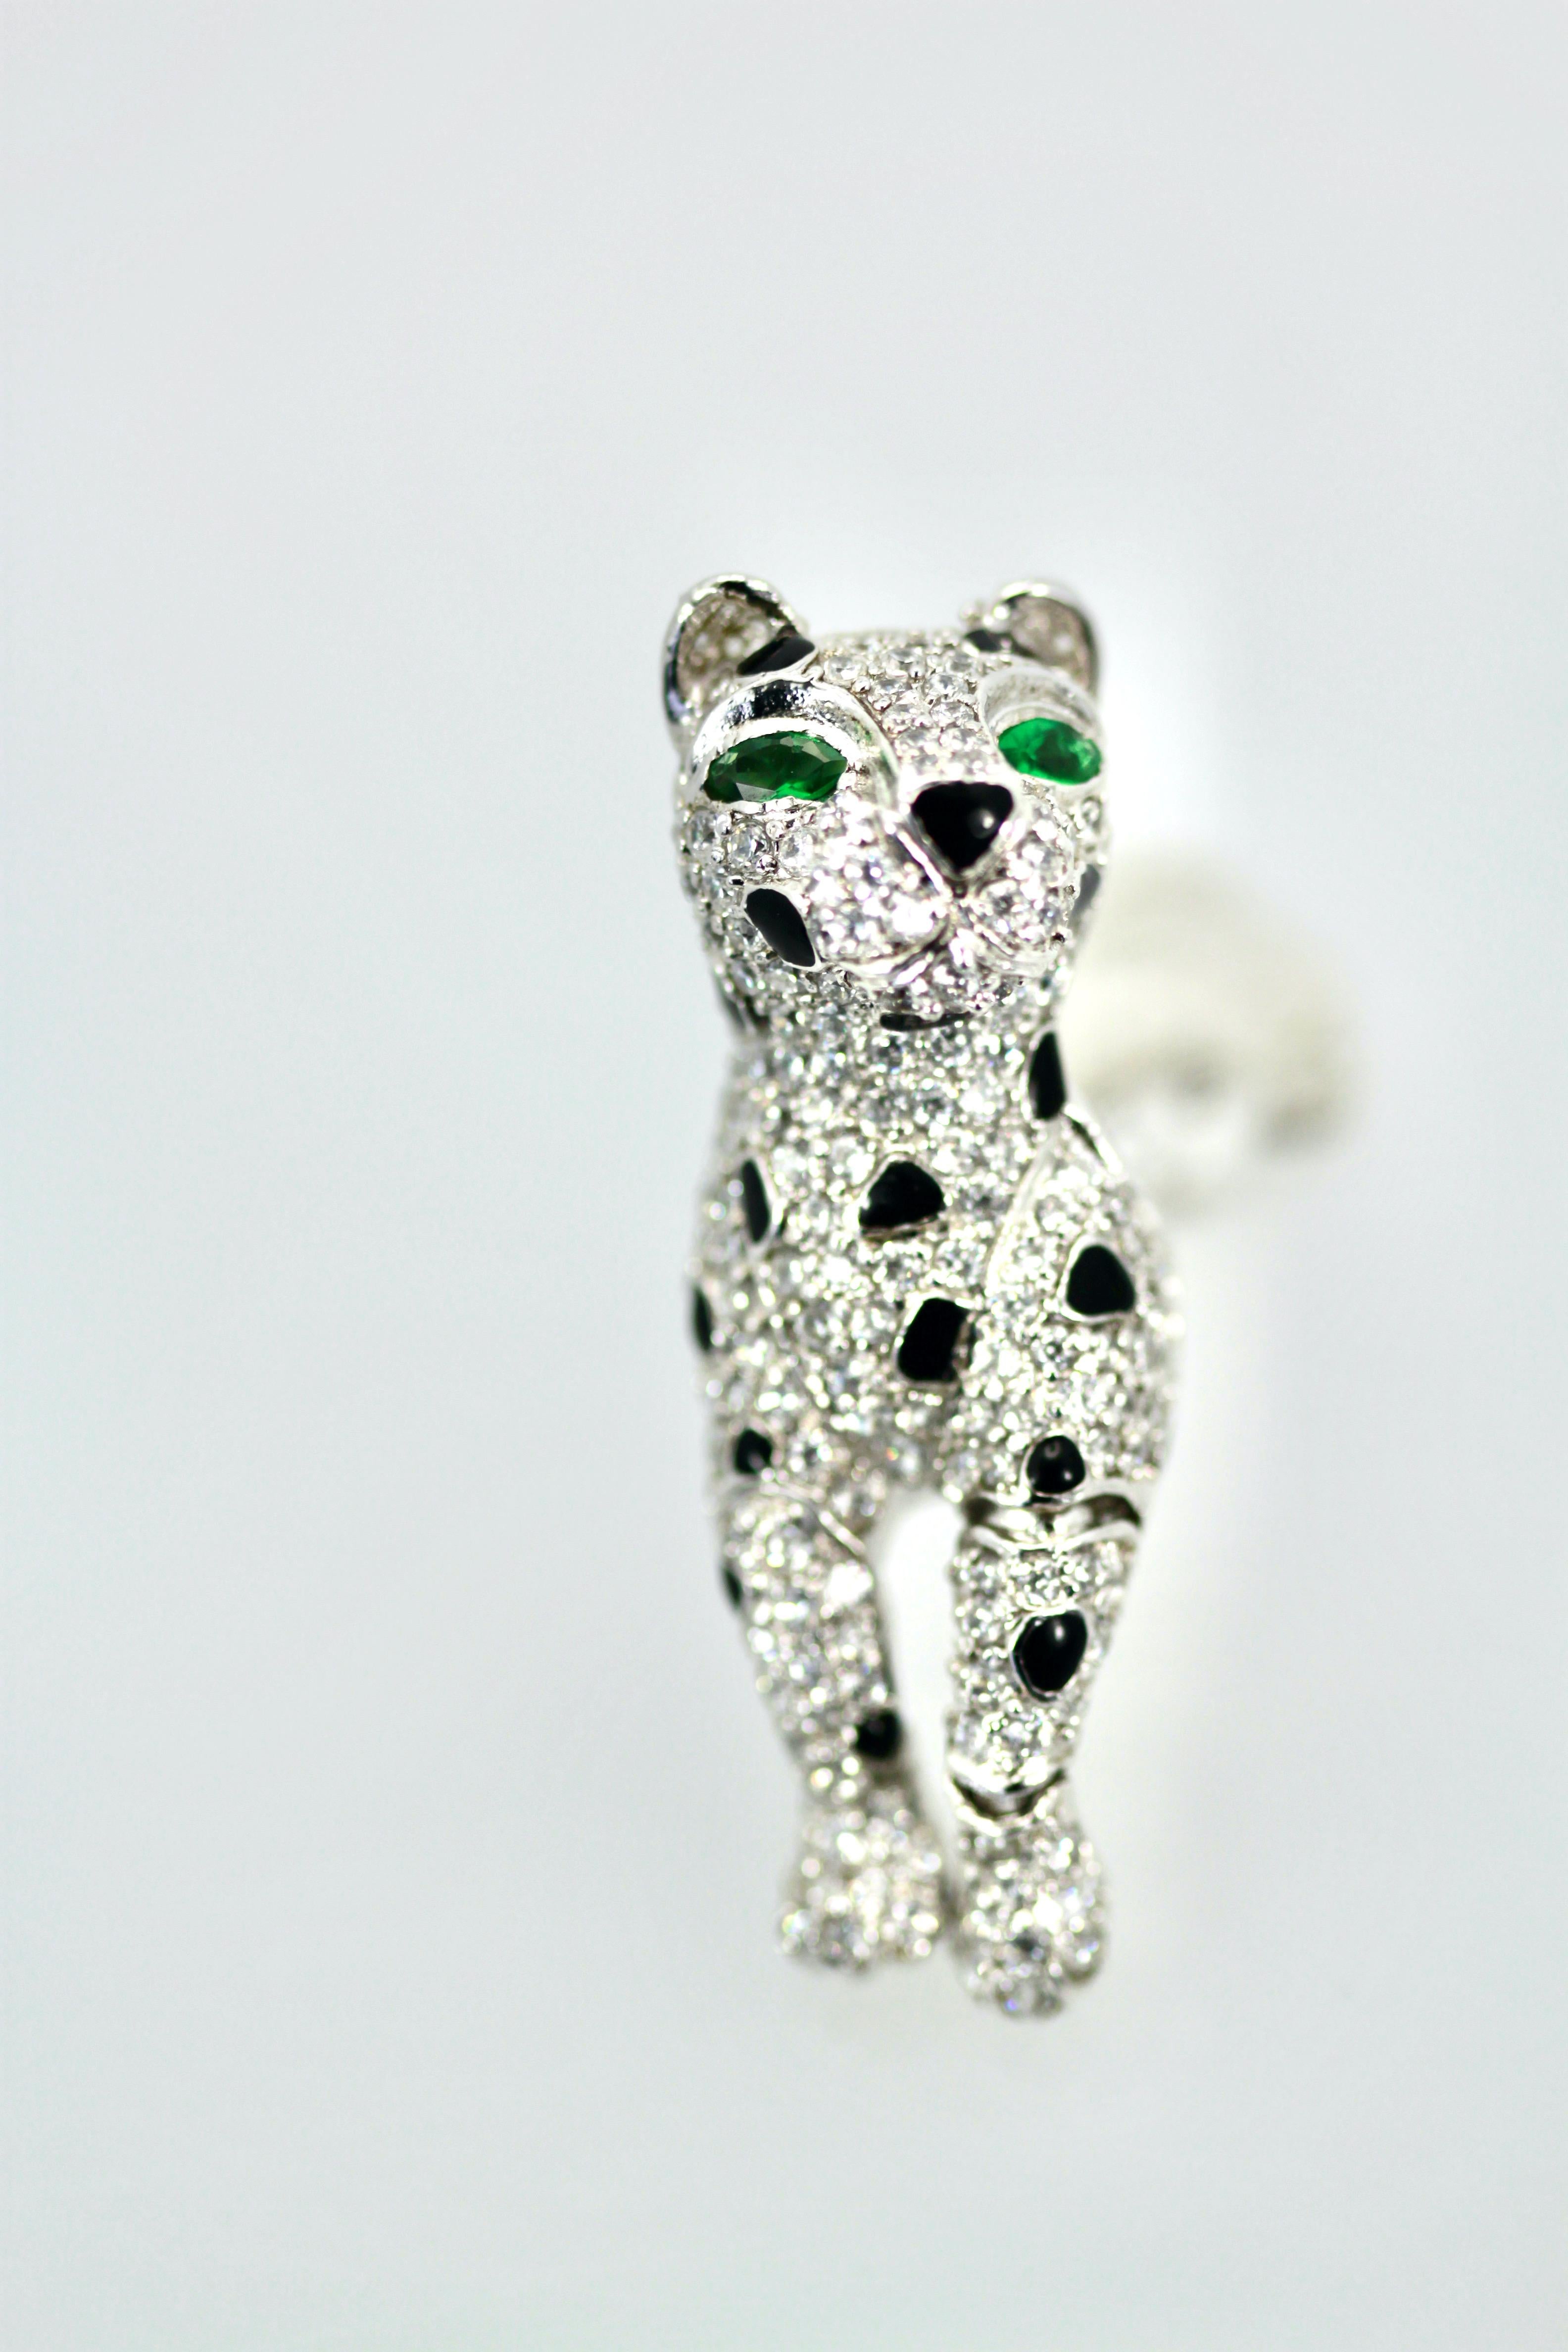 Diese Sterling Silber Onyx Panther Ohrringe sind zitternd wie Kopf und Beine bewegen.  Obwohl es sich hierbei nicht um echte Diamanten oder Smaragde handelt, sondern um Modeschmuck, sind das Aussehen und die Haptik einfach großartig.  Ich liebe die